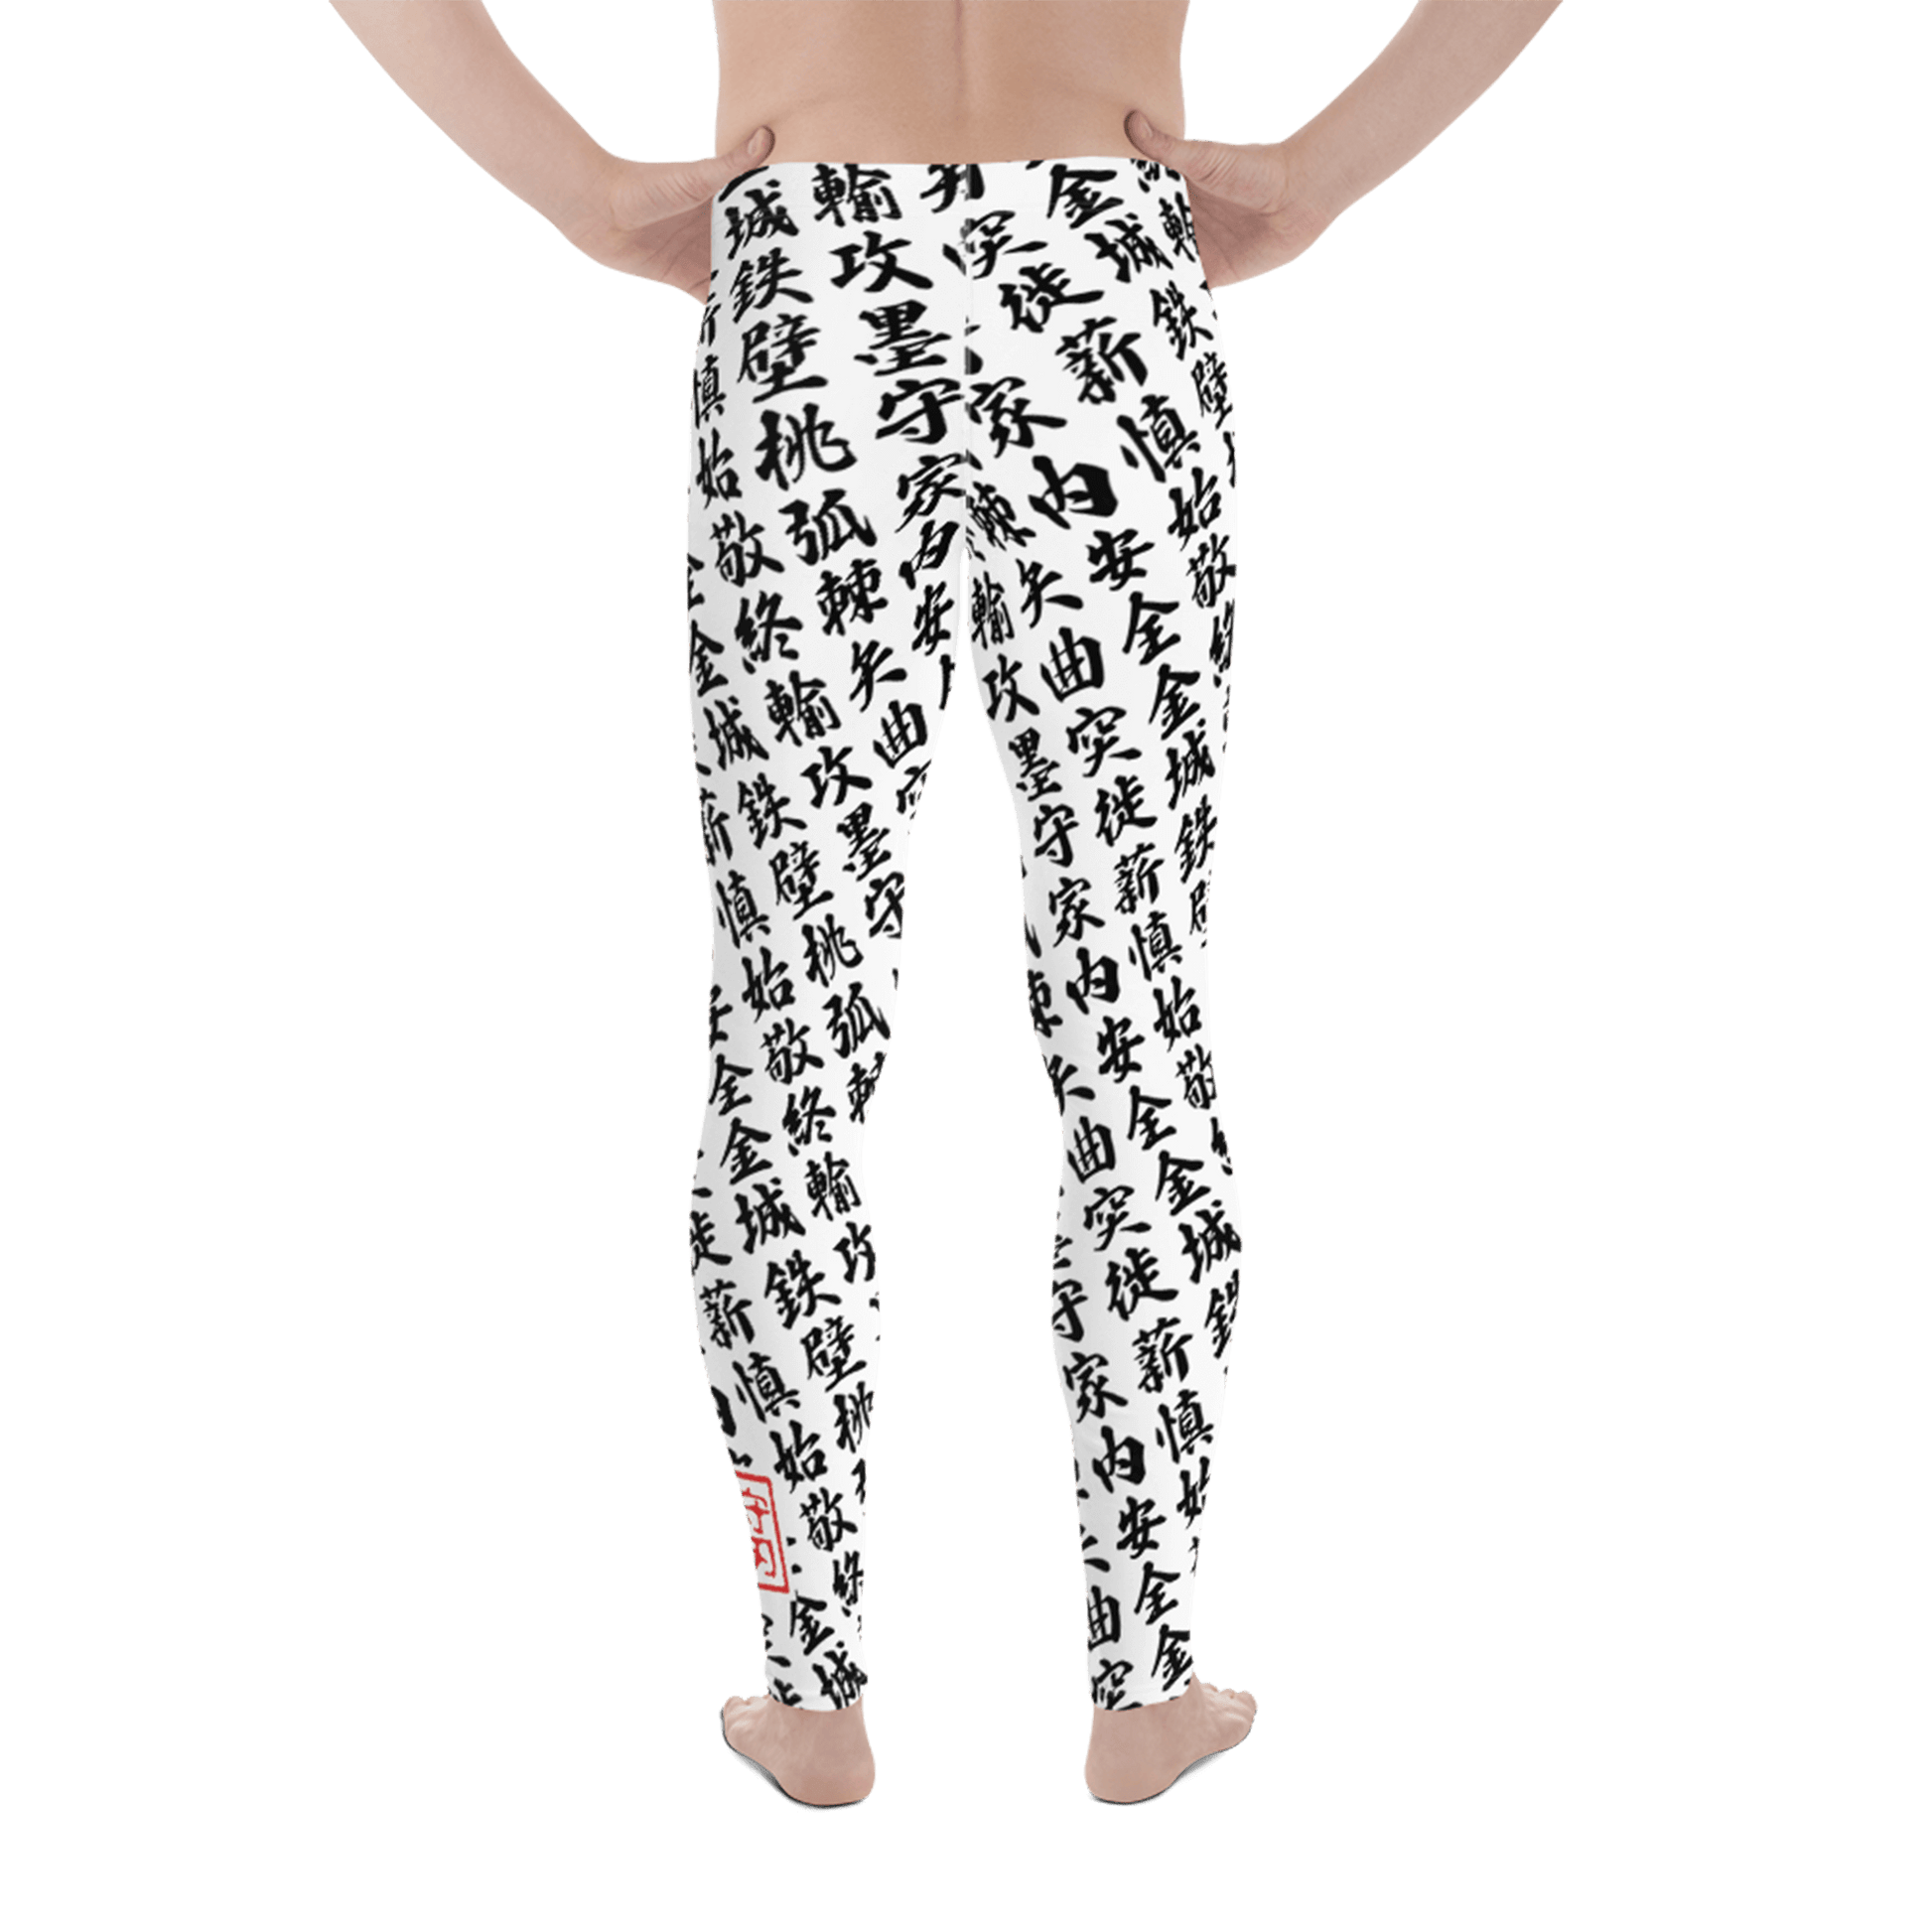 Men white leggings with all-over print in Japanese KANJI